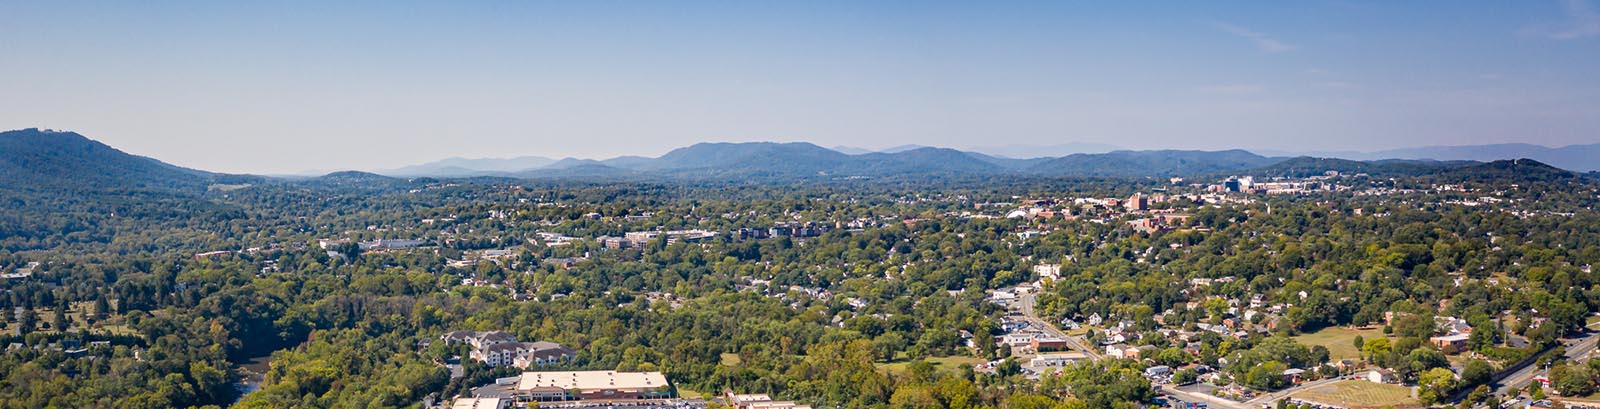 Pantops Mountain, Charlottesville, VA